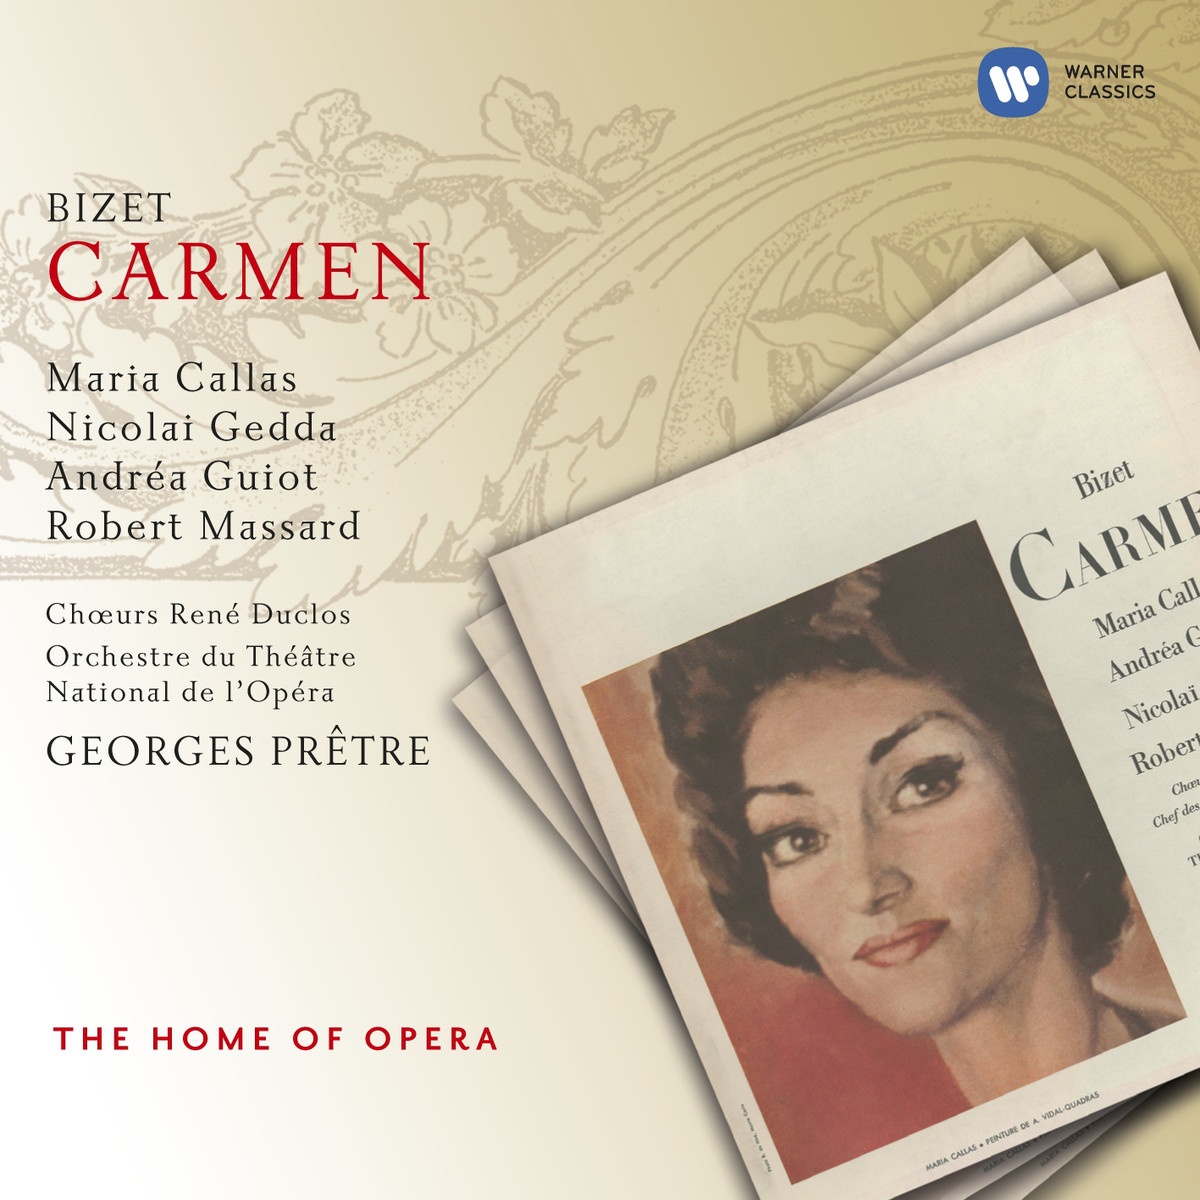 Carmen 1997 Digital Remaster, Act 1: La cloche a sonne.... Dans l' air